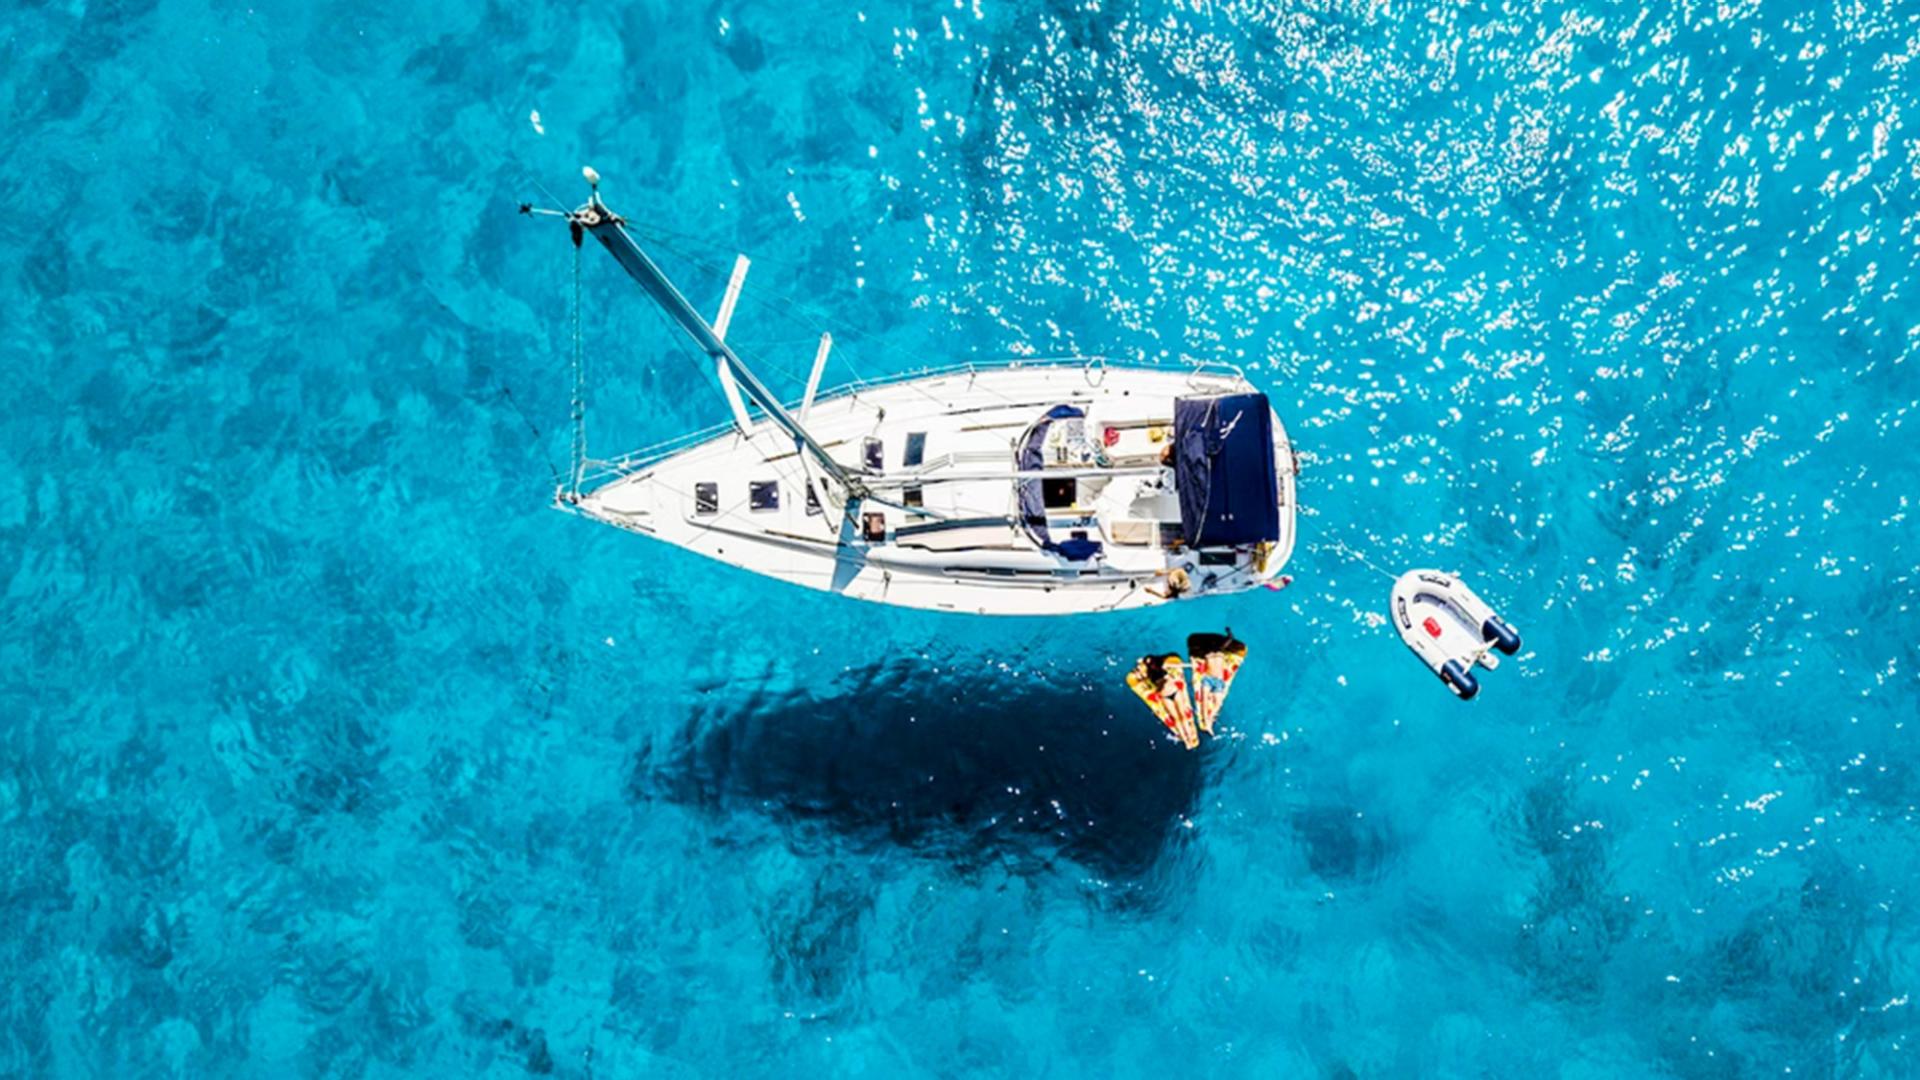 Zwei Personen auf Luftmatratzen schwimmen neben einem Segelboot